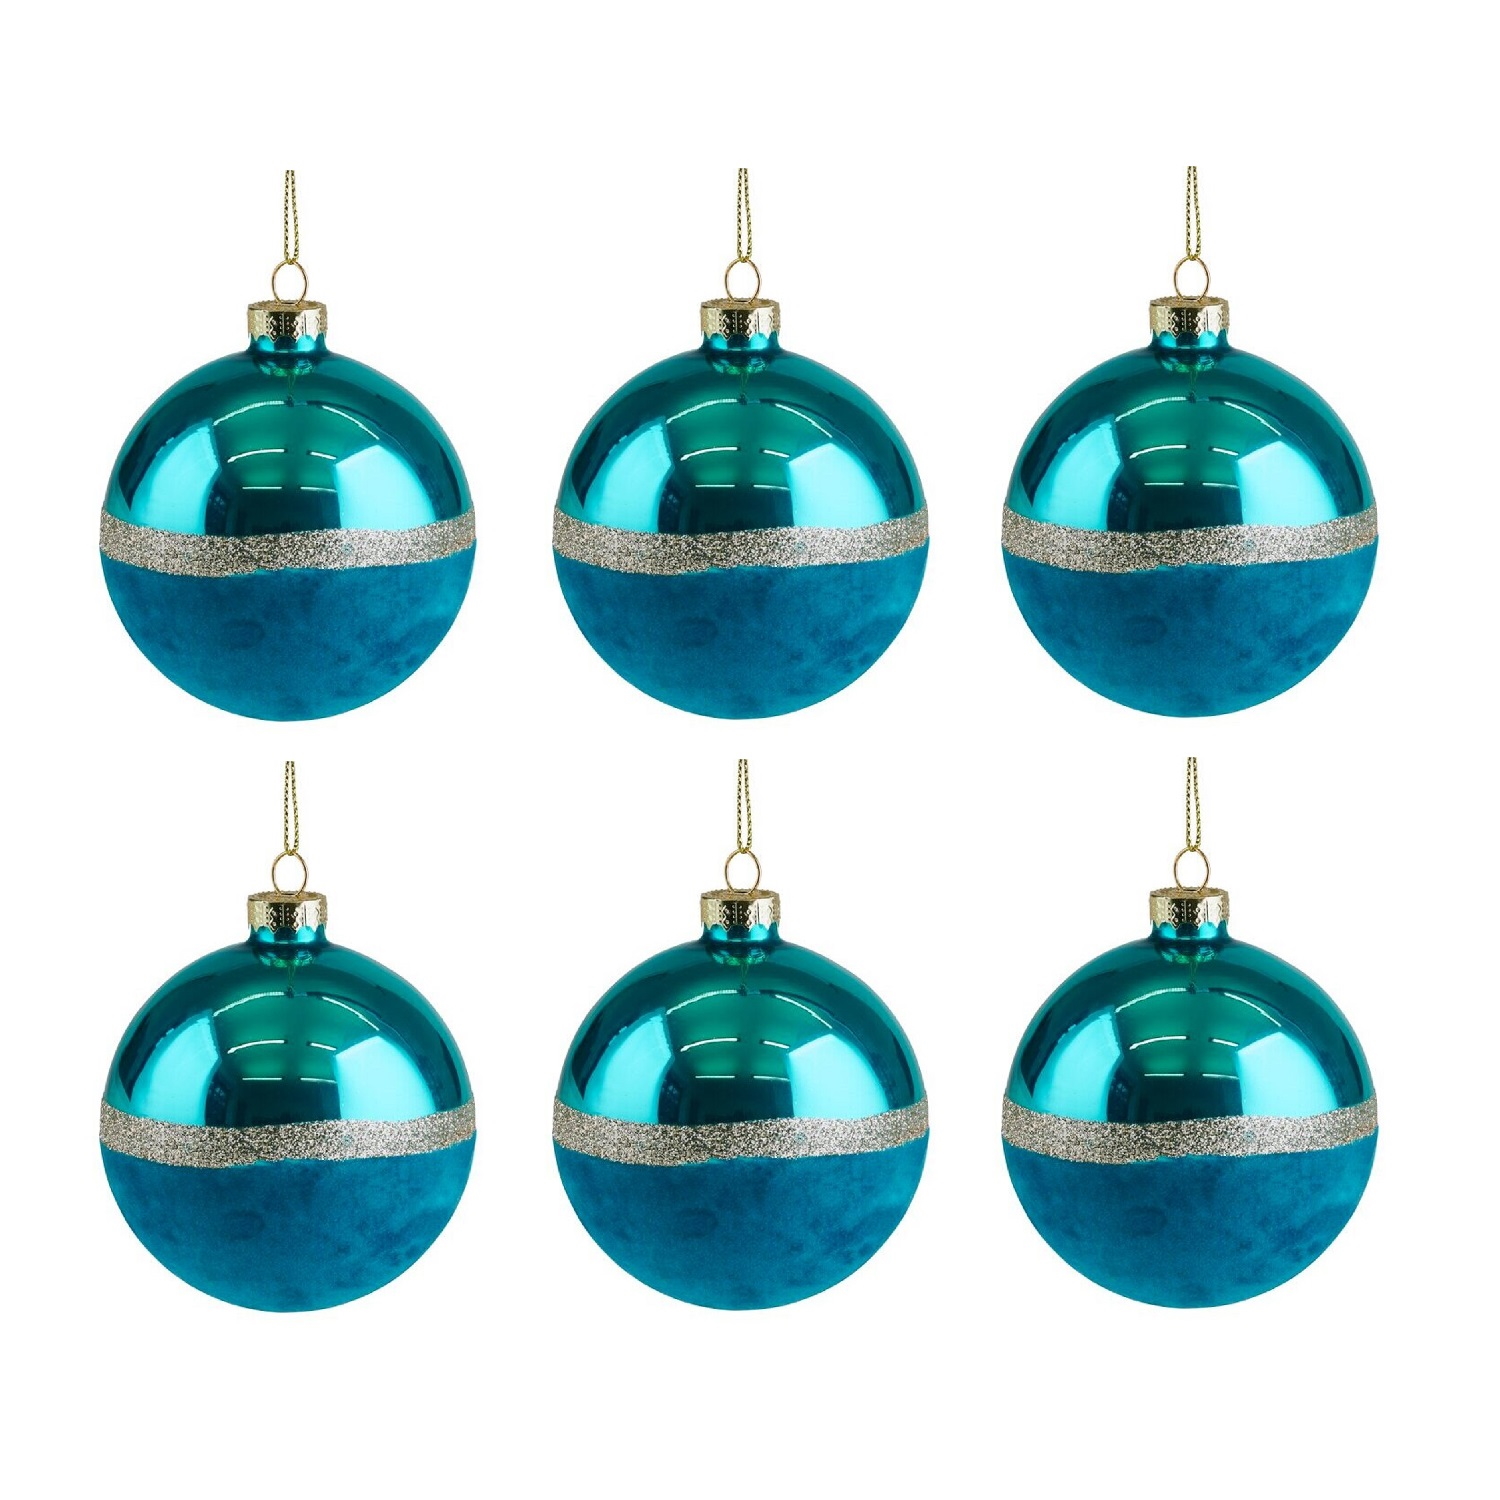 Weihnachtskugel Seoul Samt Set 8cm blau 6 Stück im Set Christbaumkugel mit Glitzerstreifen